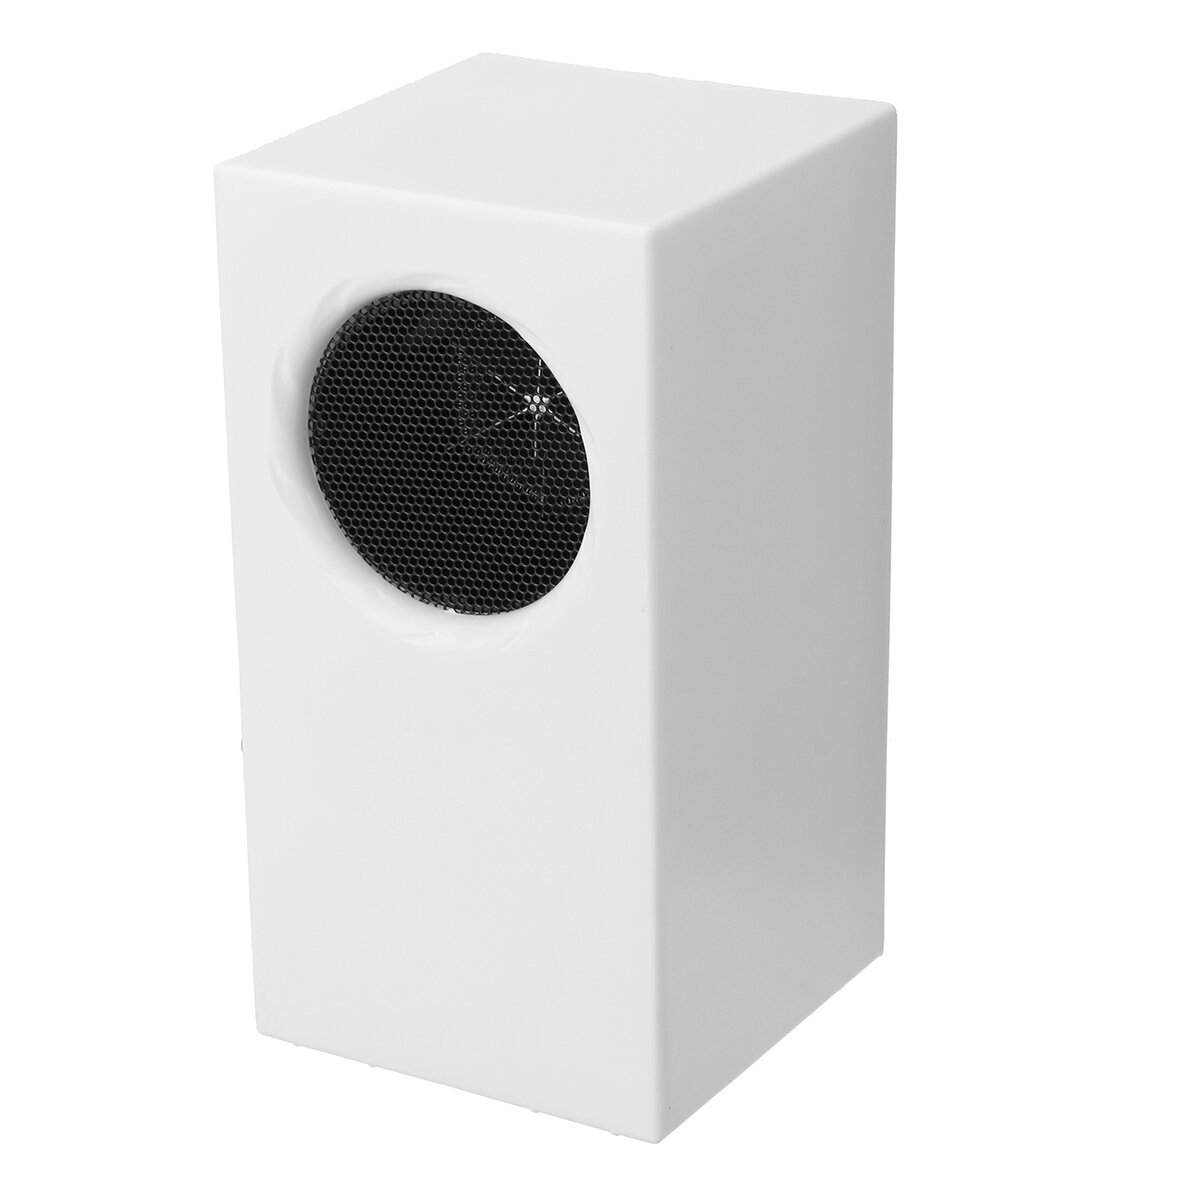 400 واط سخان كهربائي صغير محمول على سطح المكتب سريع التسخين للحماية من الحرارة الزائدة للمنزل والمكتب